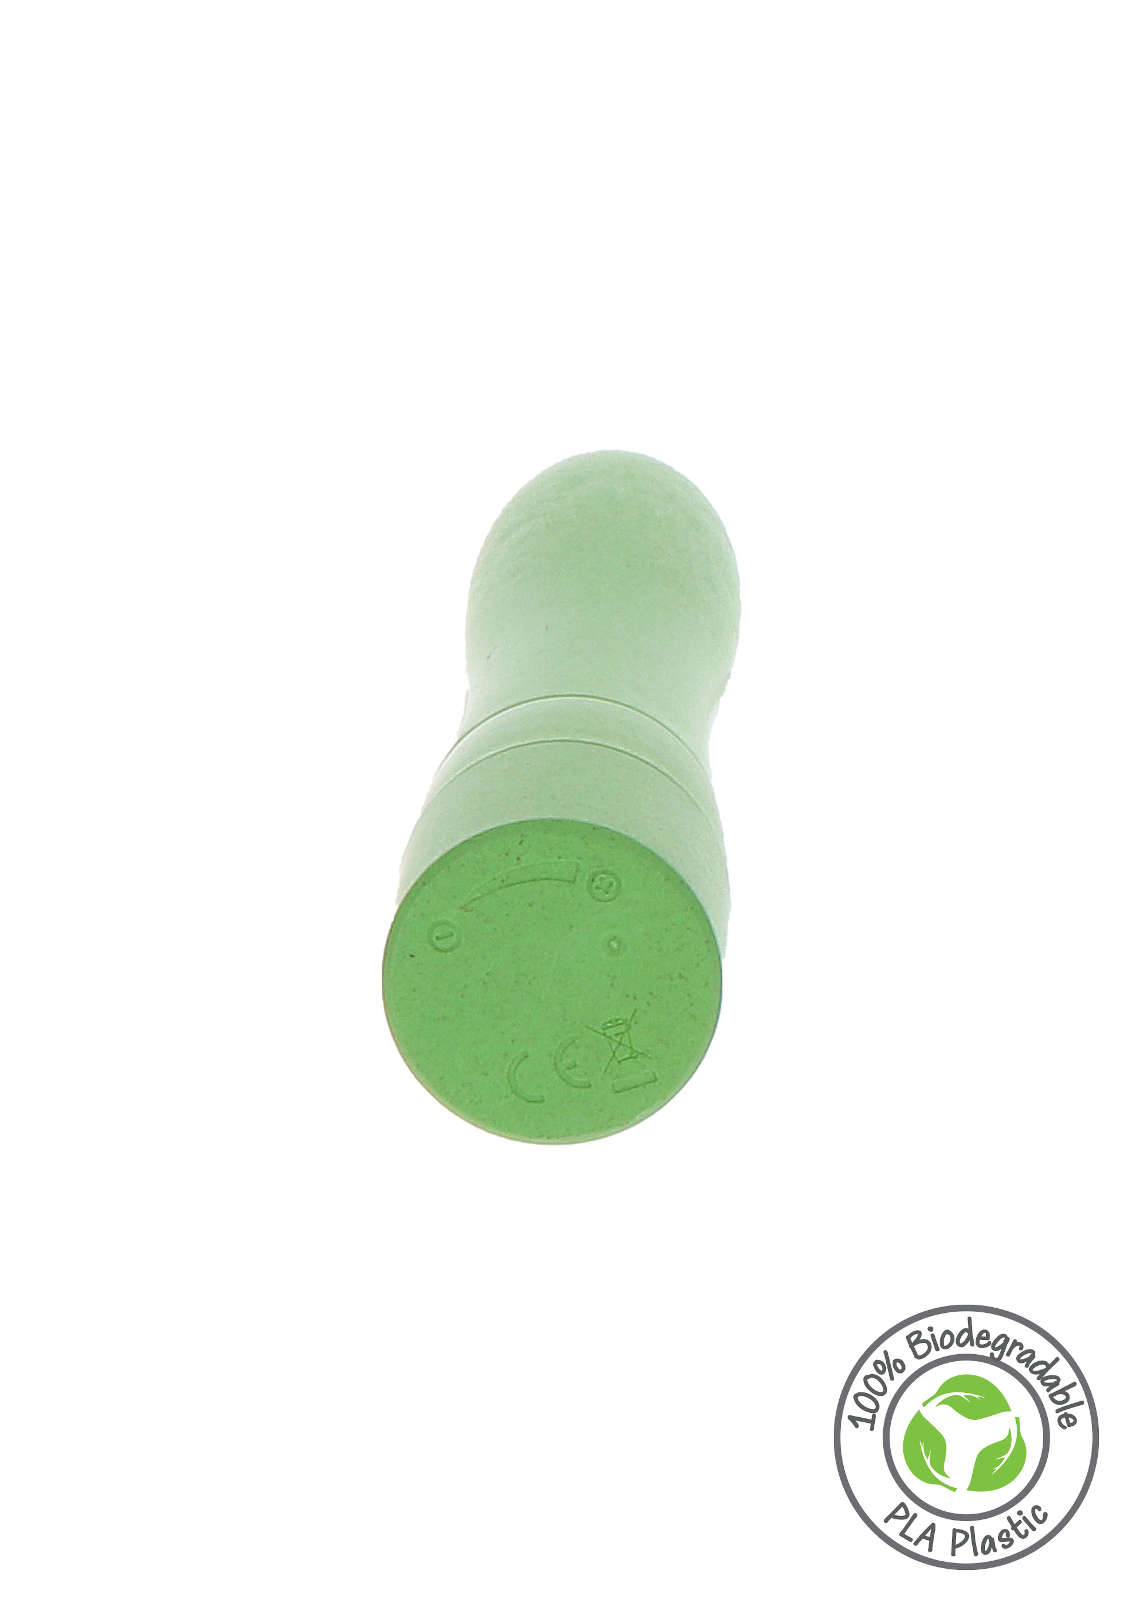 Fuck Green Vegan Vibrator | einfache Steuerung per Knopfdruck